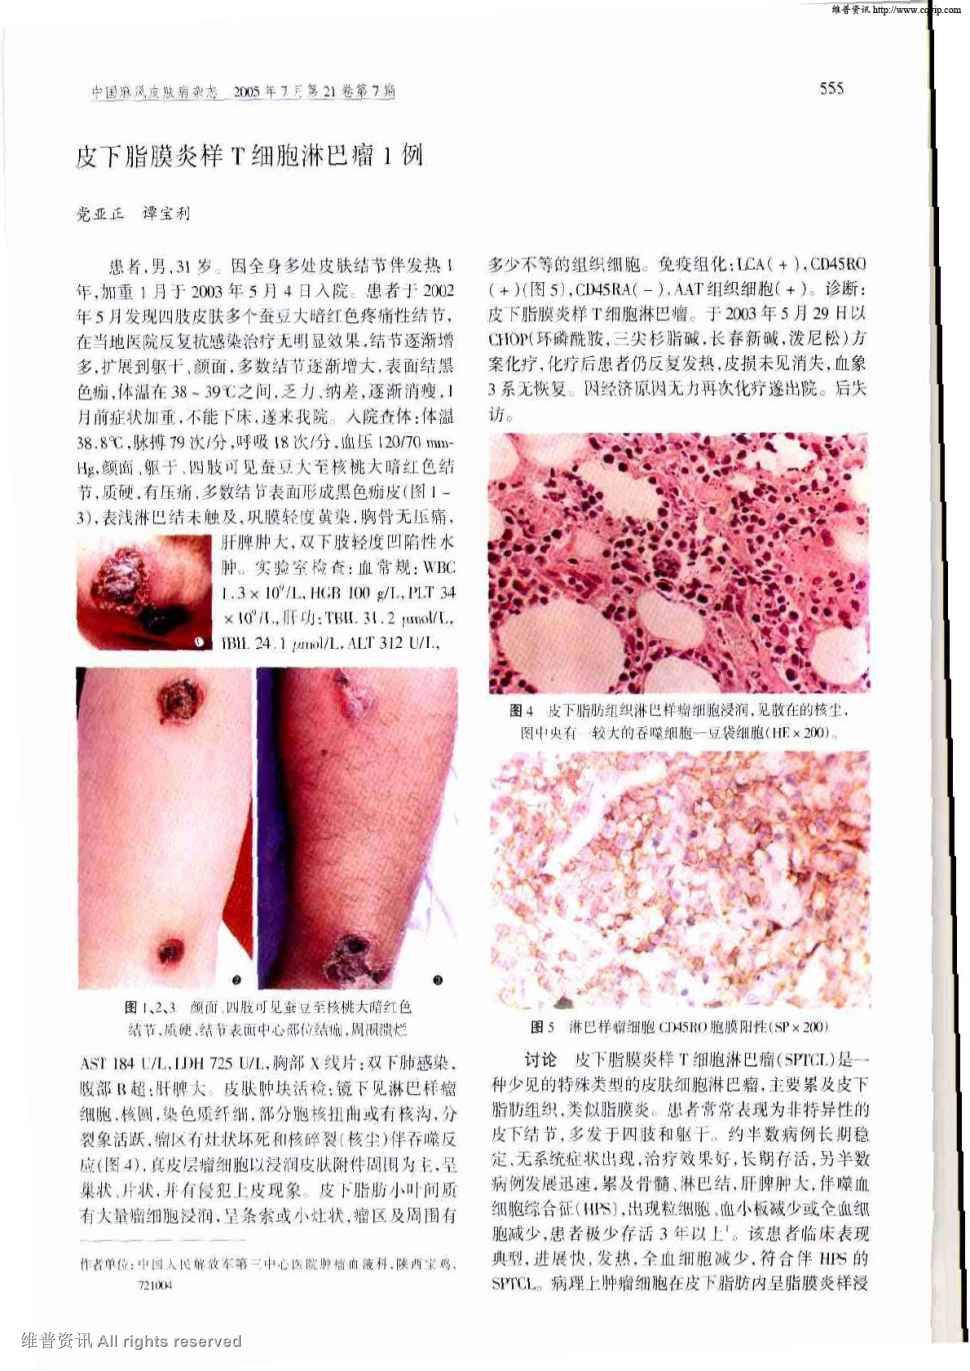 期刊皮下脂膜炎样t细胞淋巴瘤1例    患者,男,31岁.